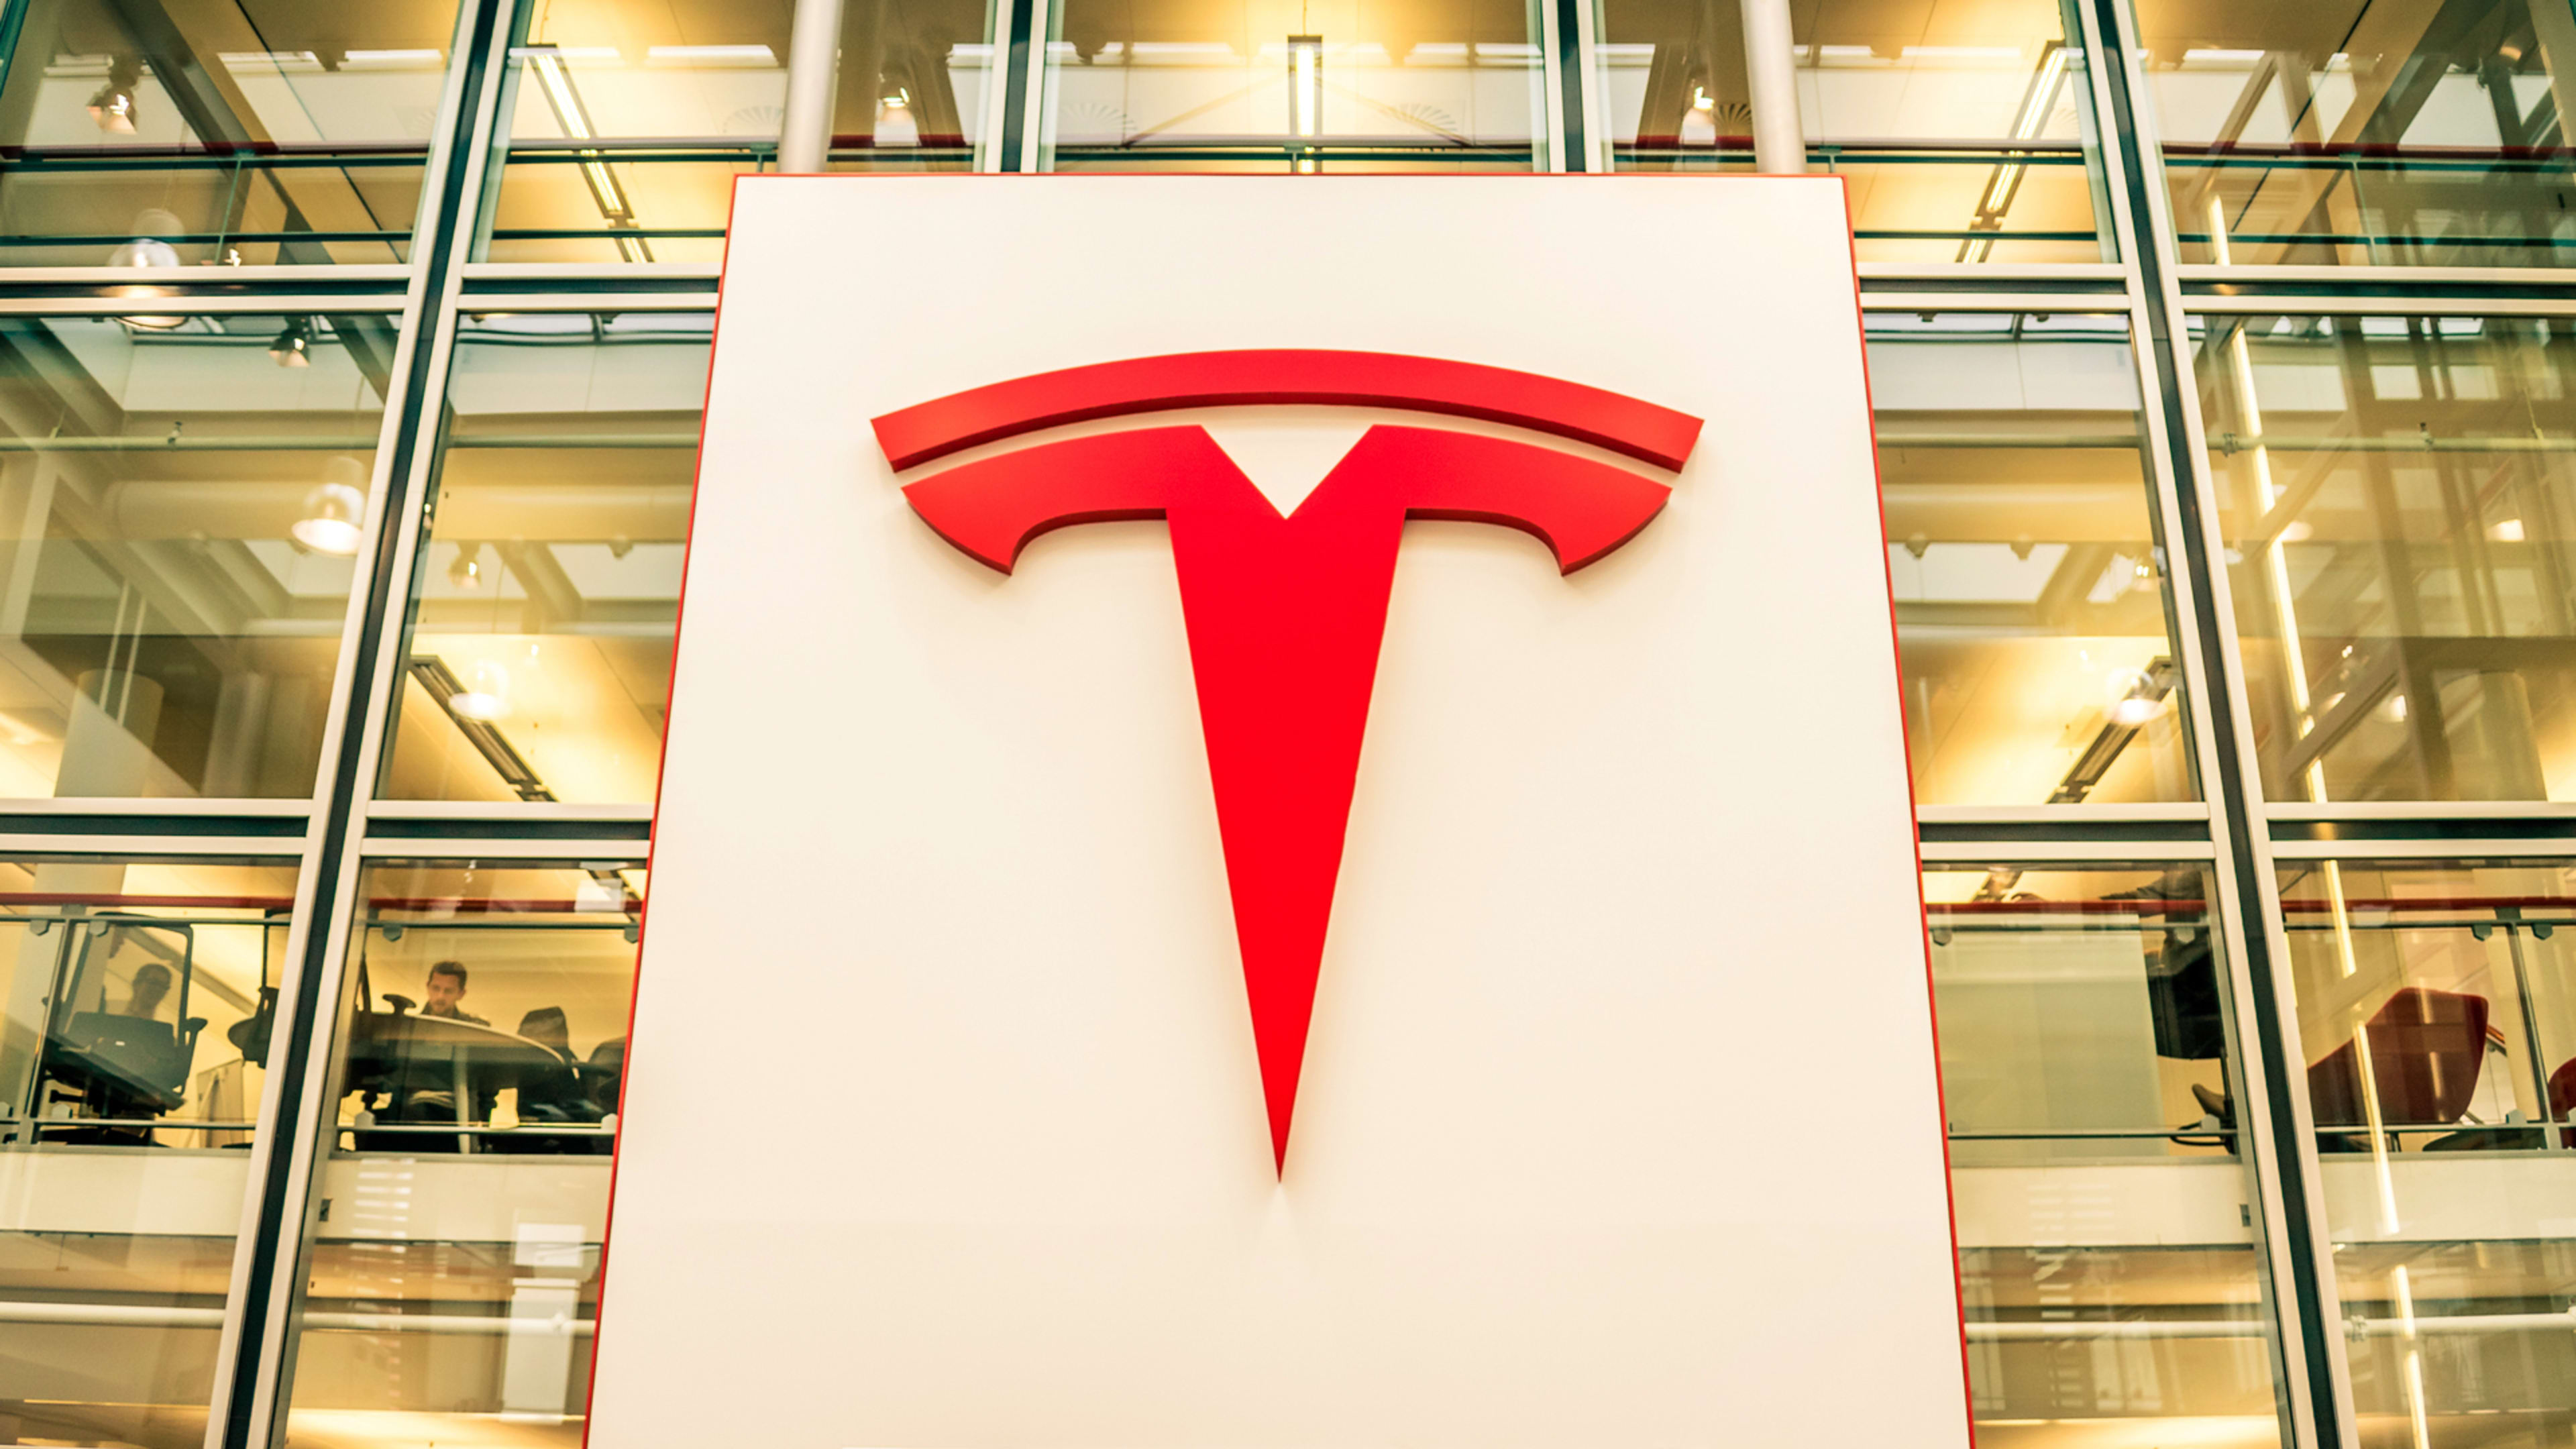 More Elon Musk Twitter fallout: Tesla stock sinks on DOJ reports